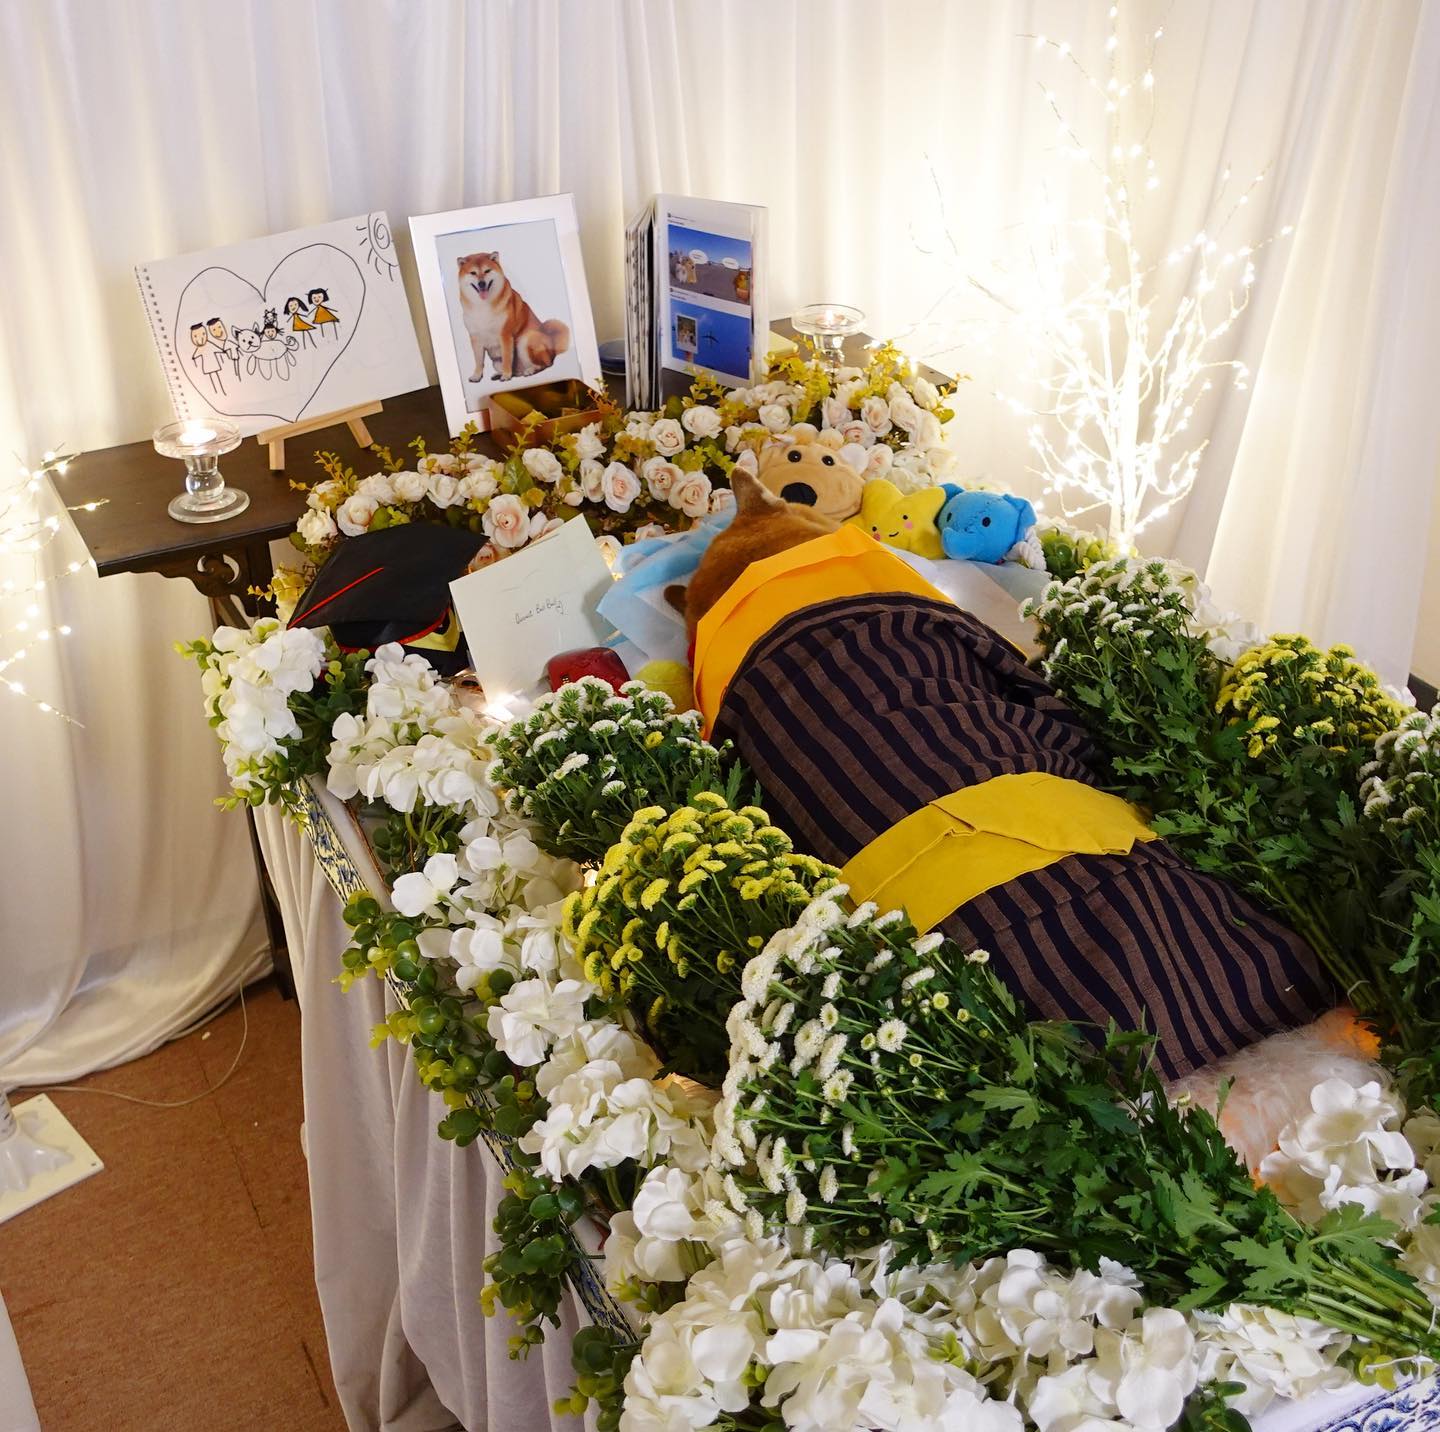 Cheems estuvo rodeado de flores y condolencias